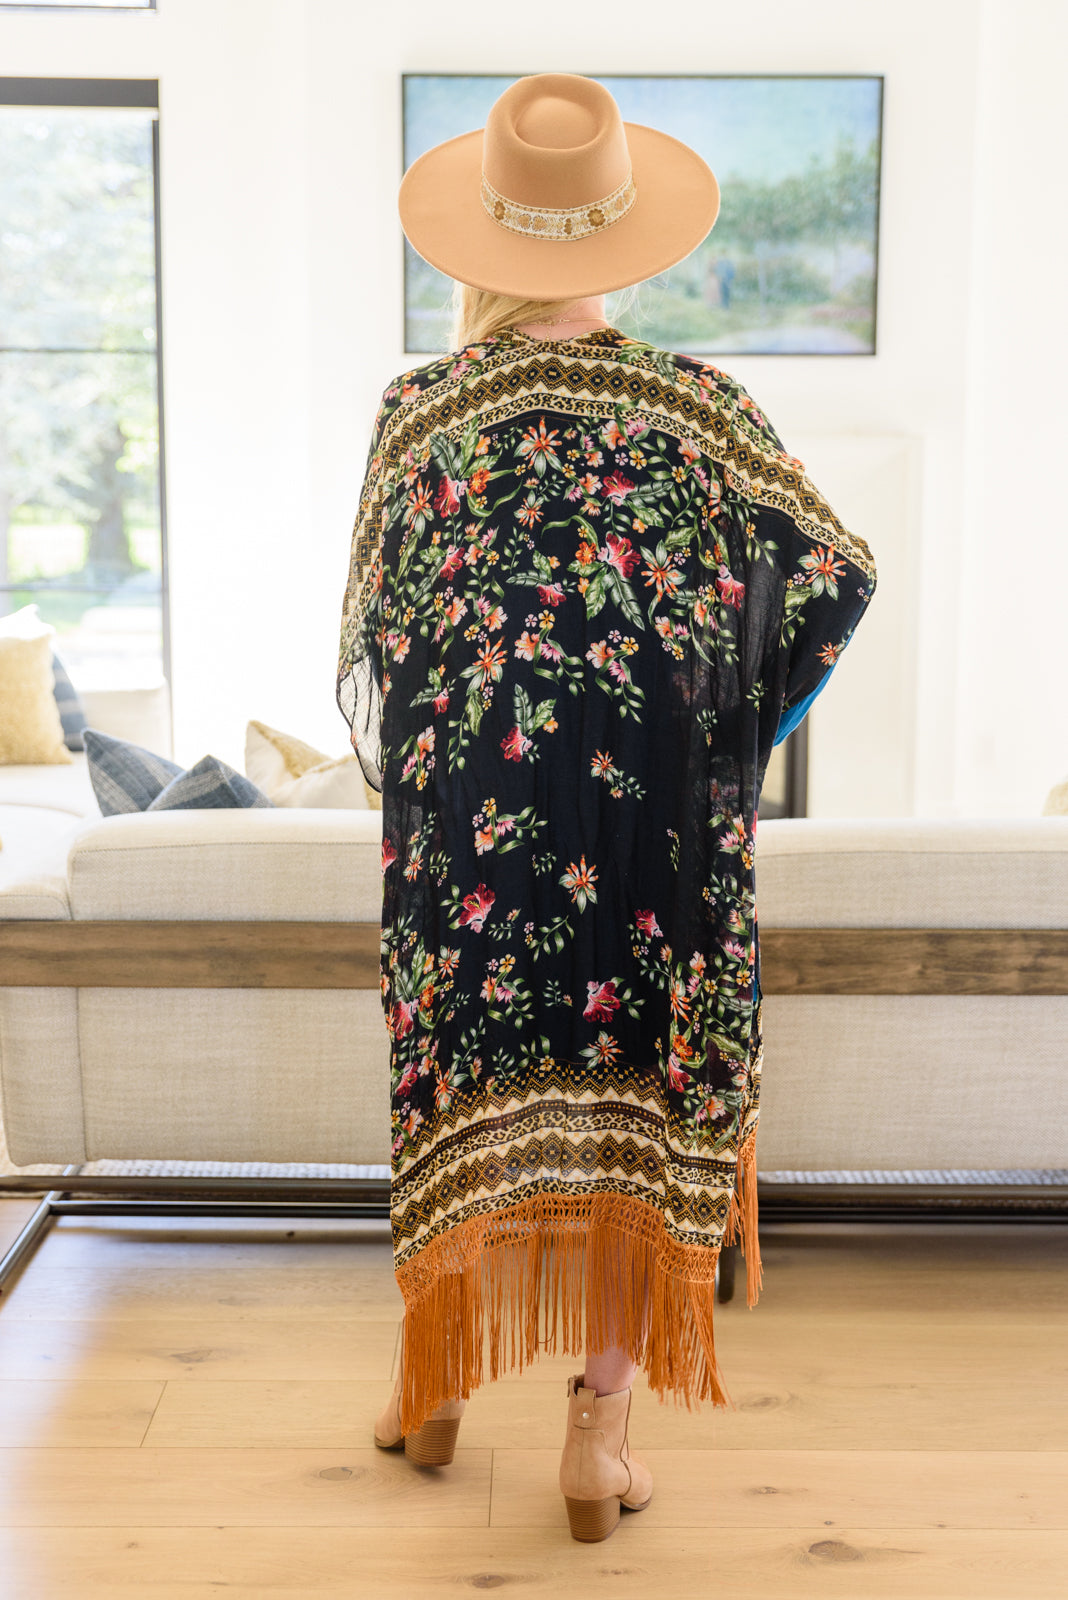 Can't Look Away - Kimono à franges florales (exclusivité en ligne)